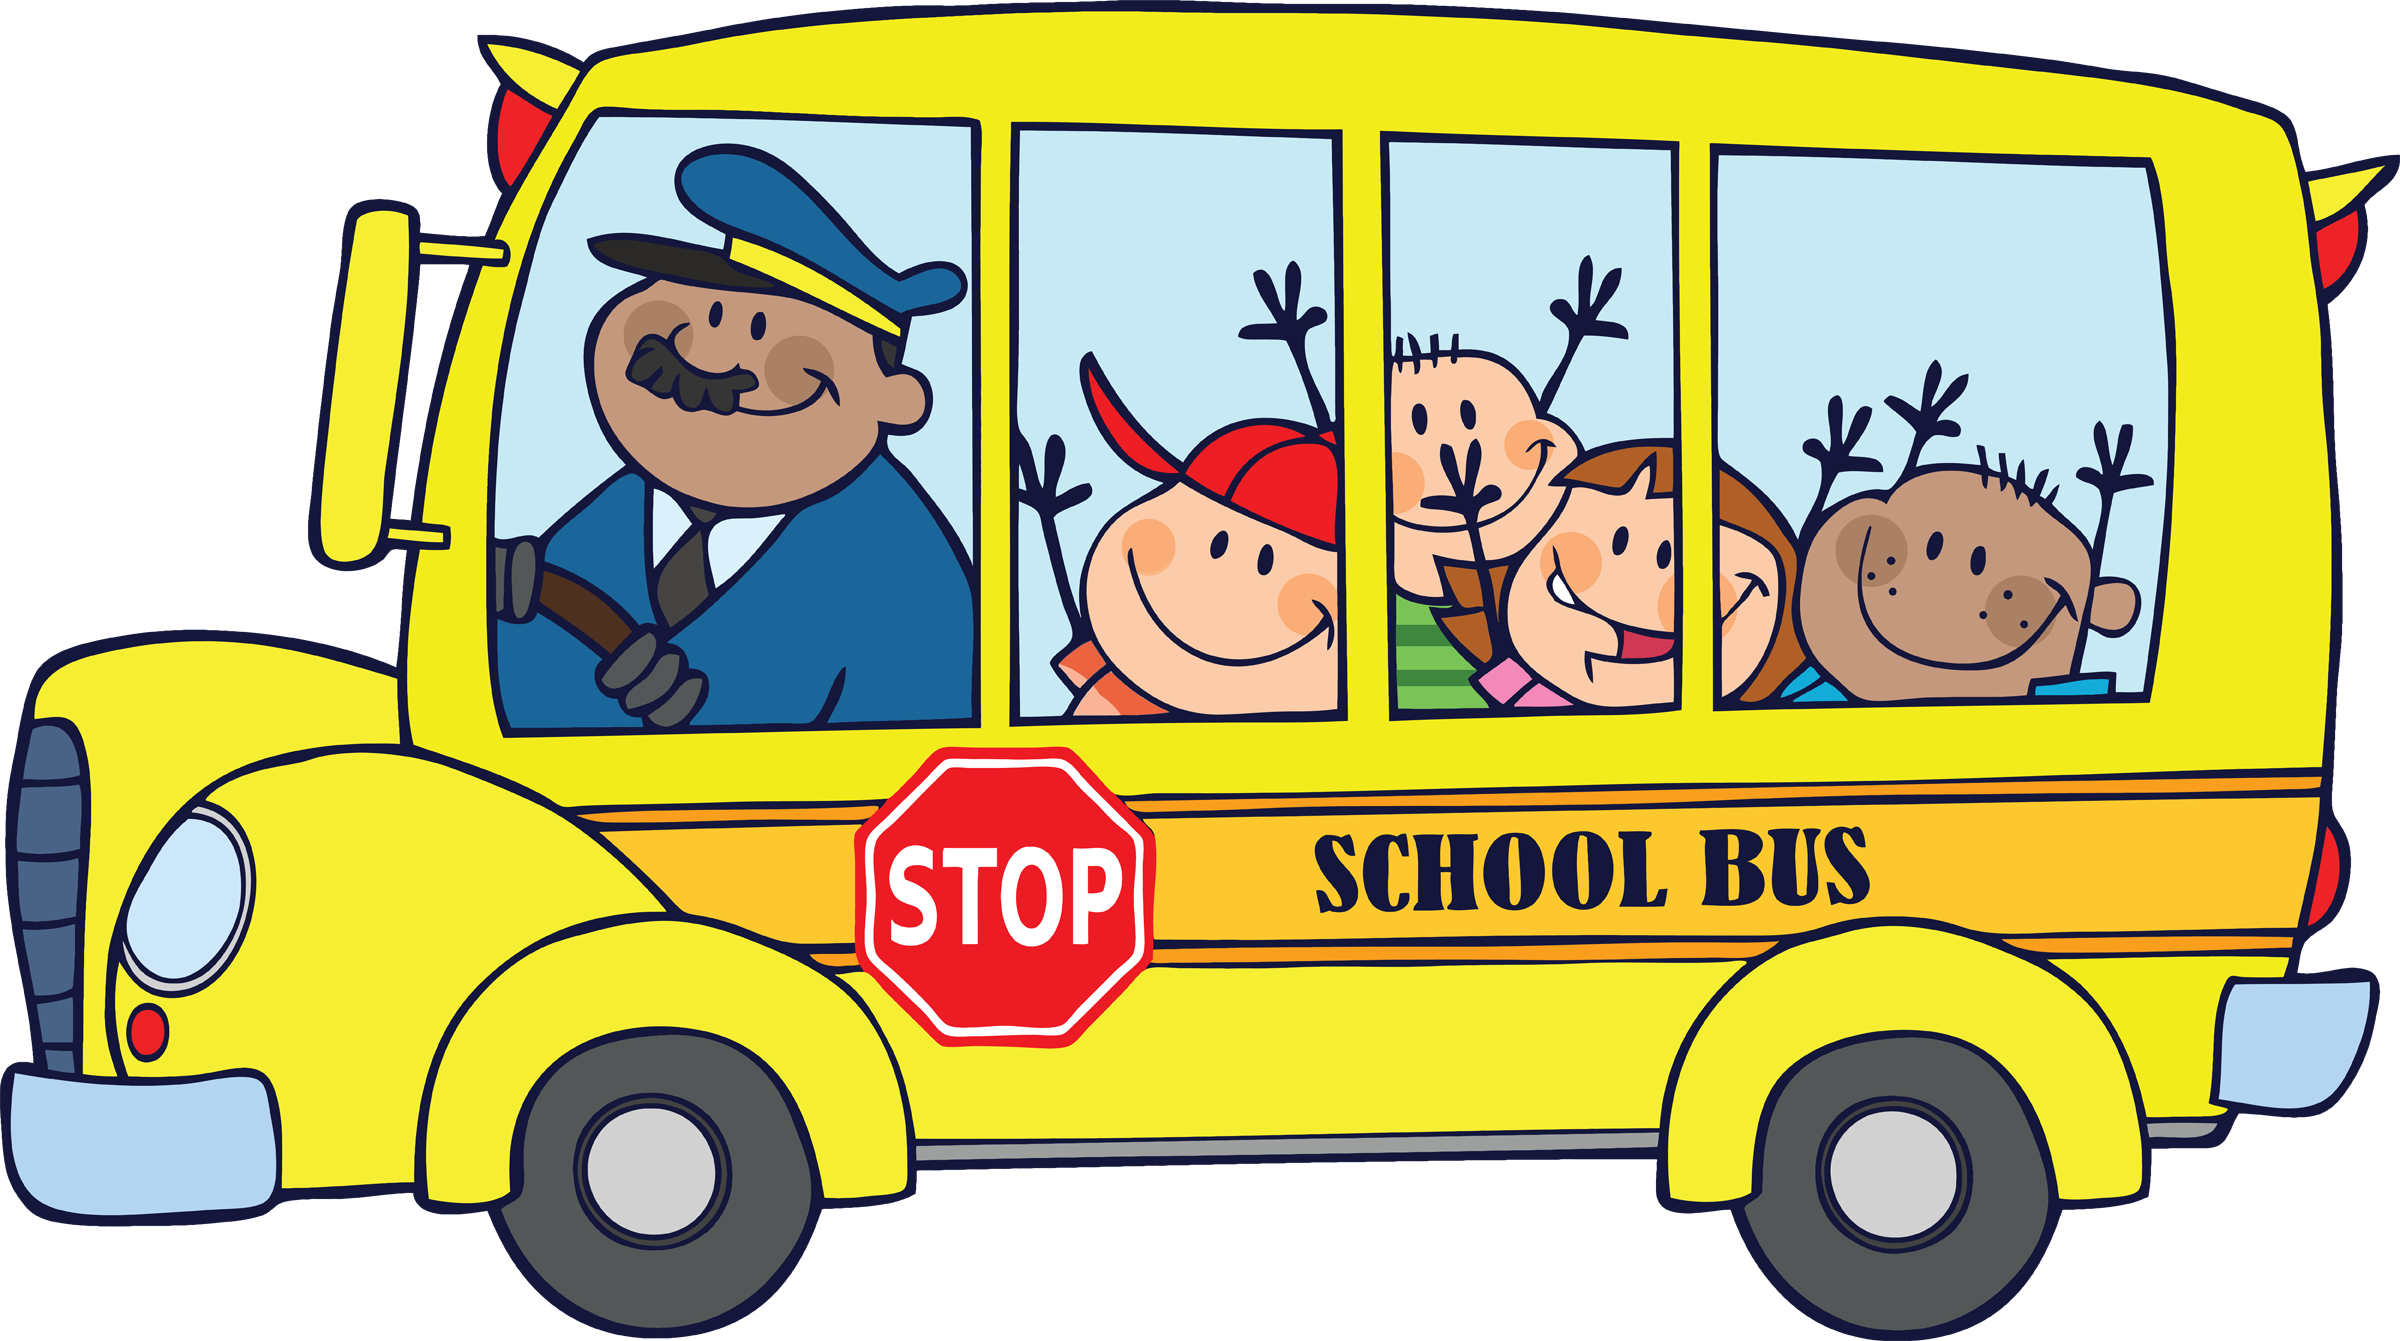 Аренда автобуса с водителем для детей. Автобус рисунок. Школьный автобус. Автобус мультяшный. Водитель автобуса для детей.